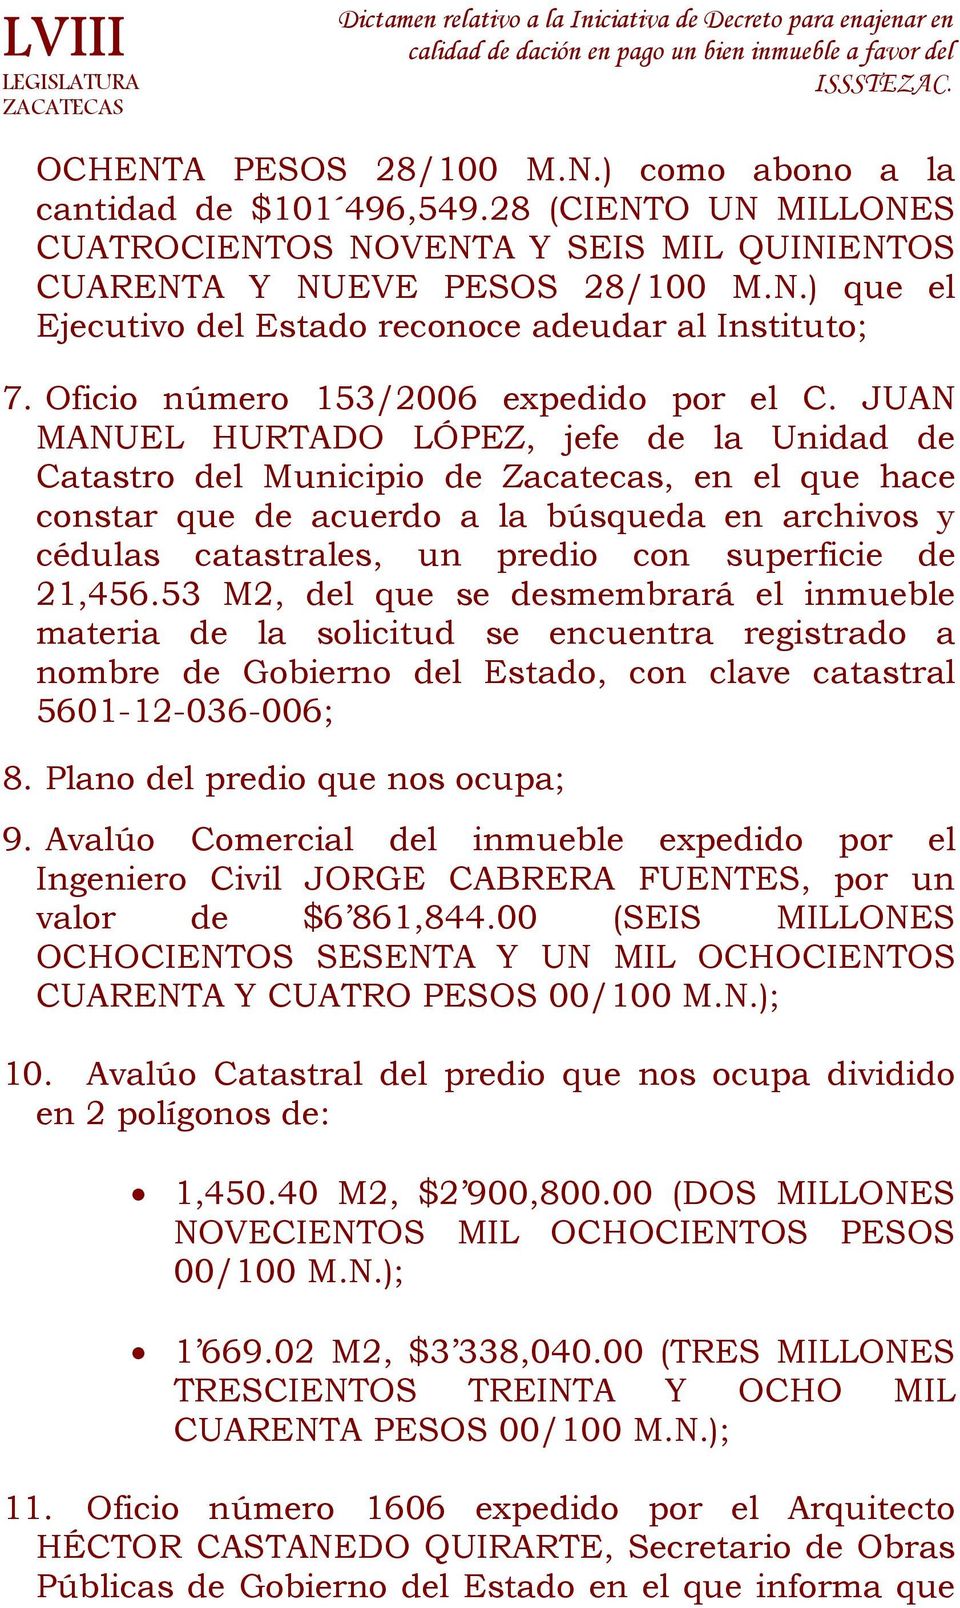 JUAN MANUEL HURTADO LÓPEZ, jefe de la Unidad de Catastro del Municipio de Zacatecas, en el que hace constar que de acuerdo a la búsqueda en archivos y cédulas catastrales, un predio con superficie de